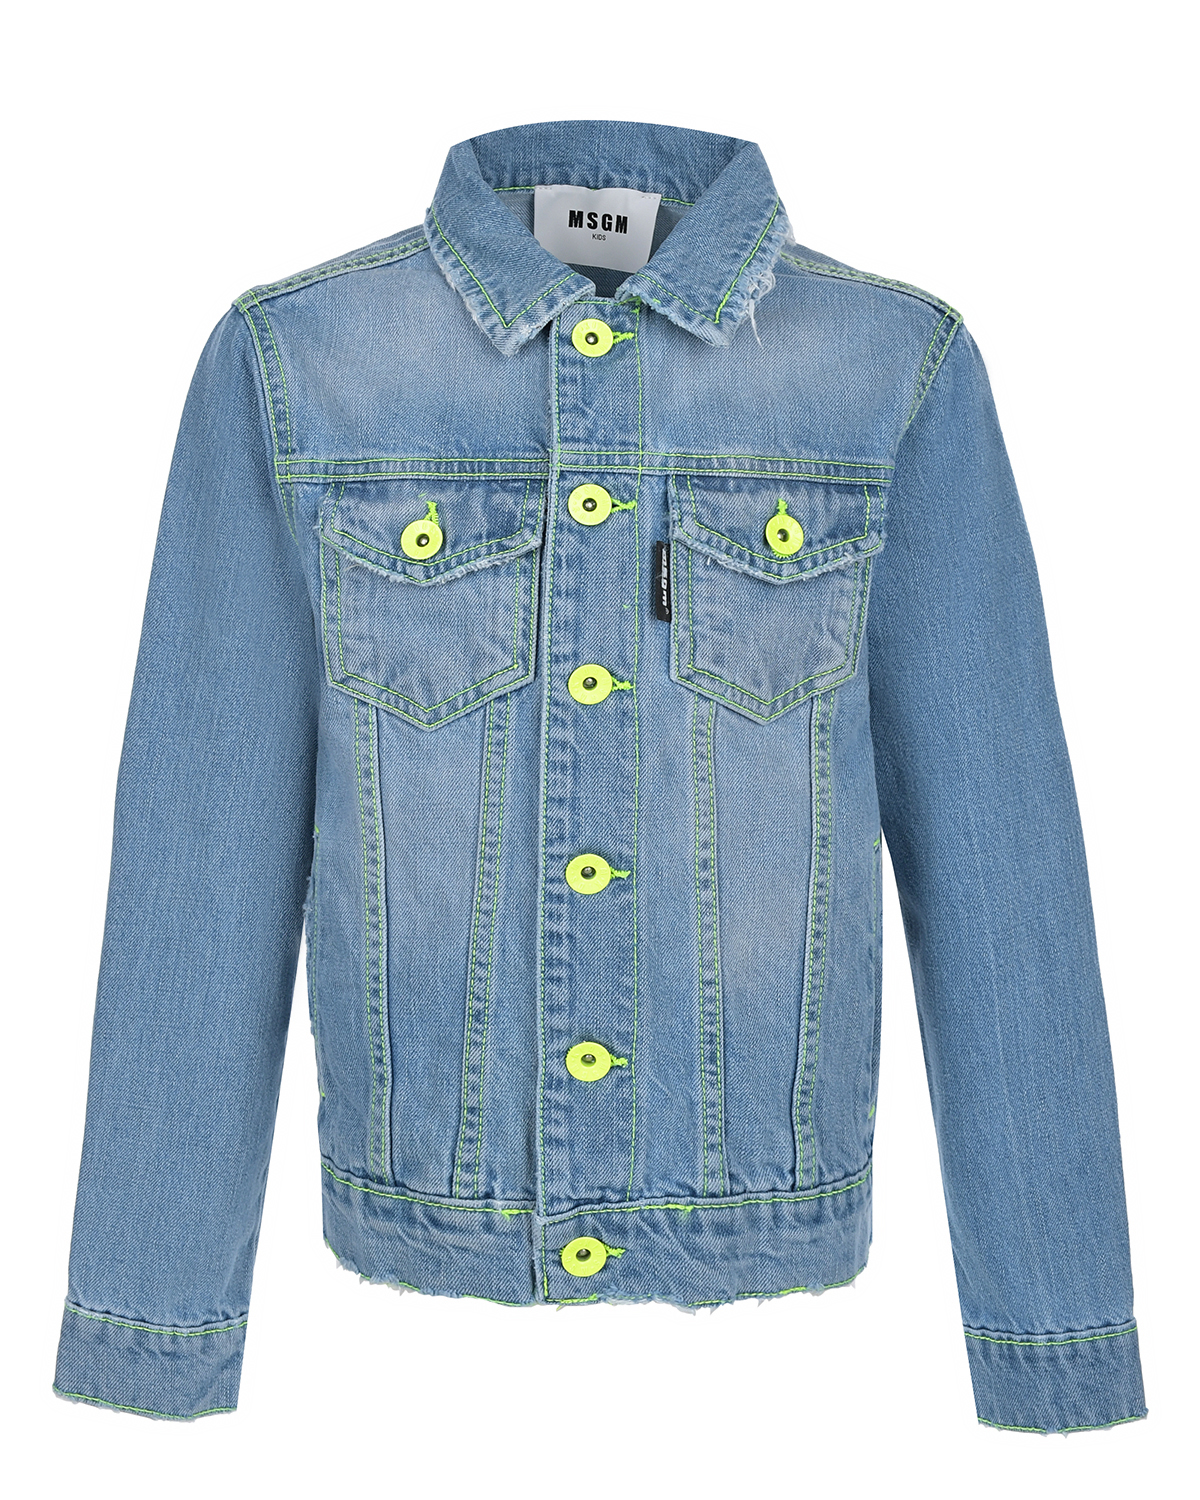 Синяя джинсовая куртка с неоновыми пуговицами MSGM, размер 164, цвет синий